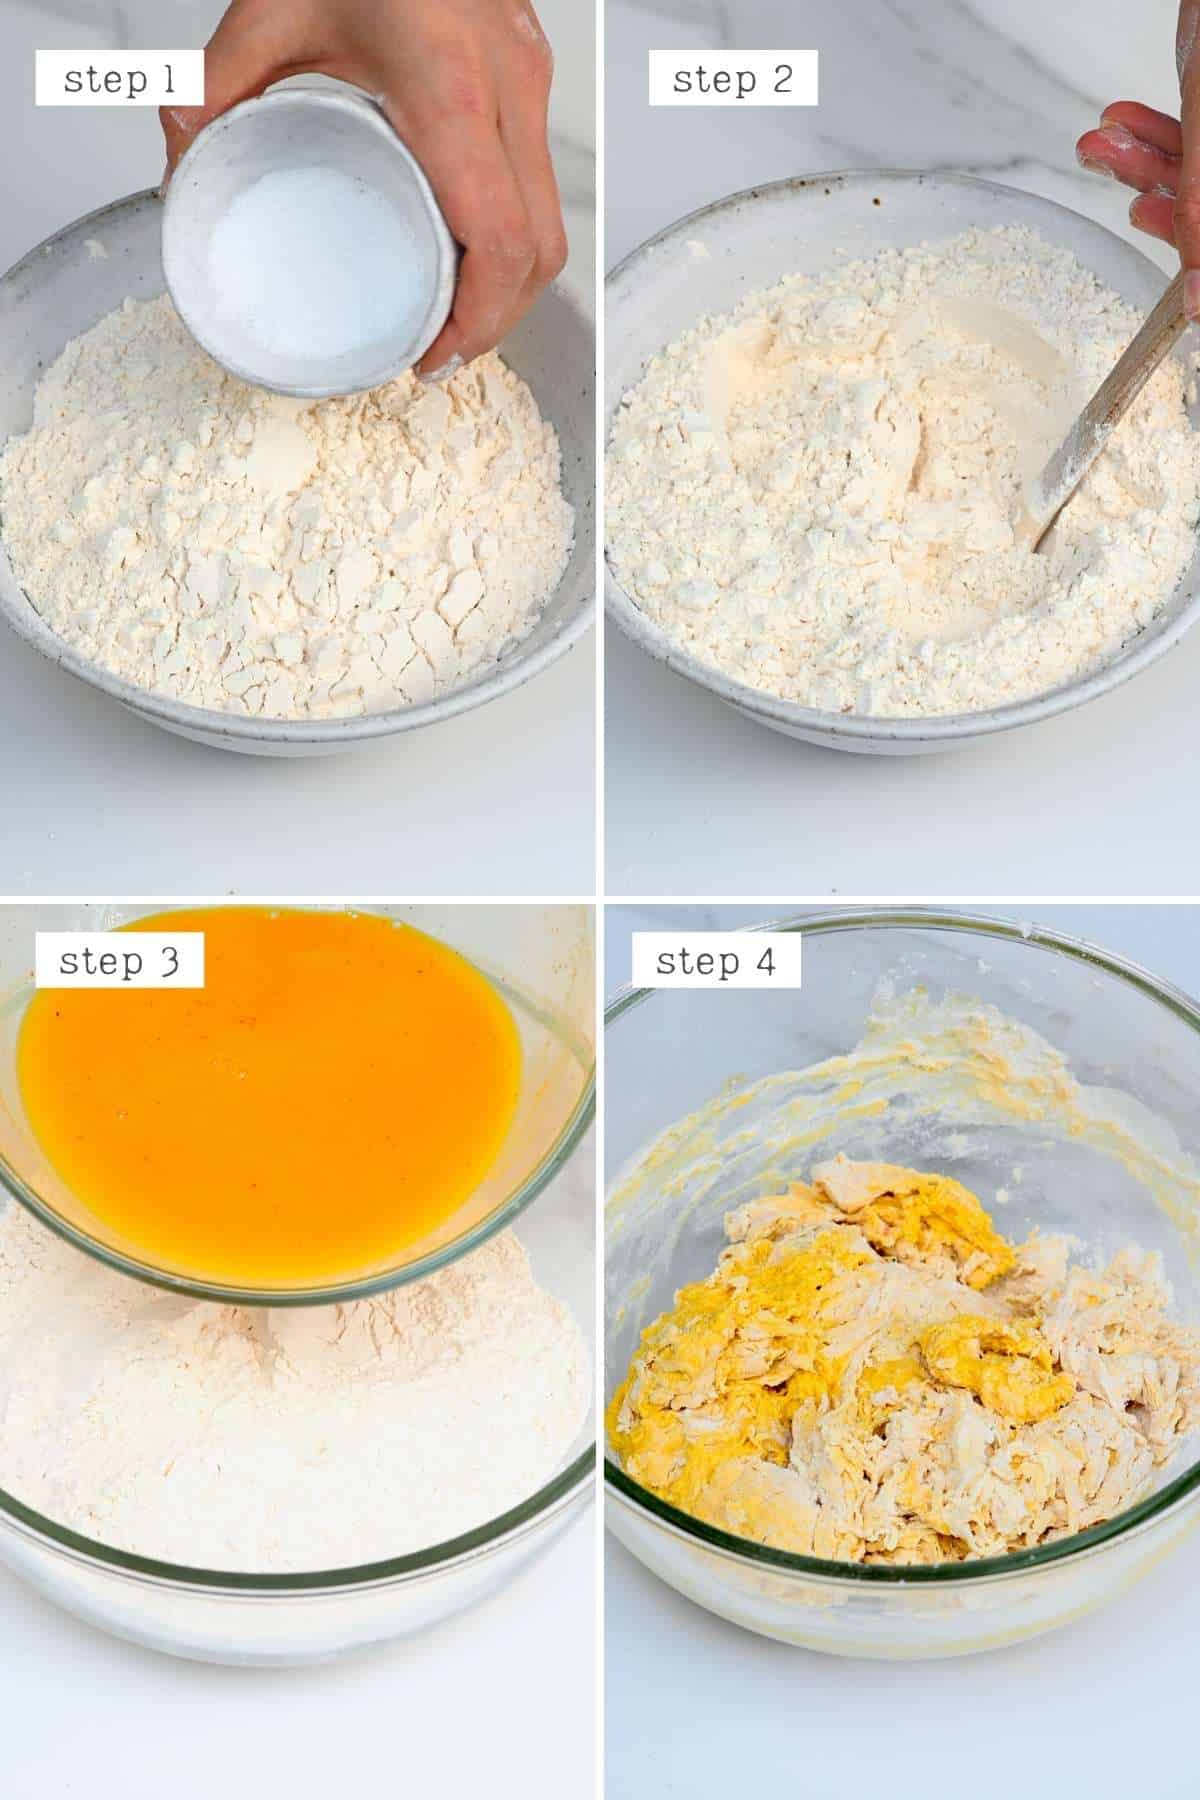 Steps for making turmeric focaccia dough